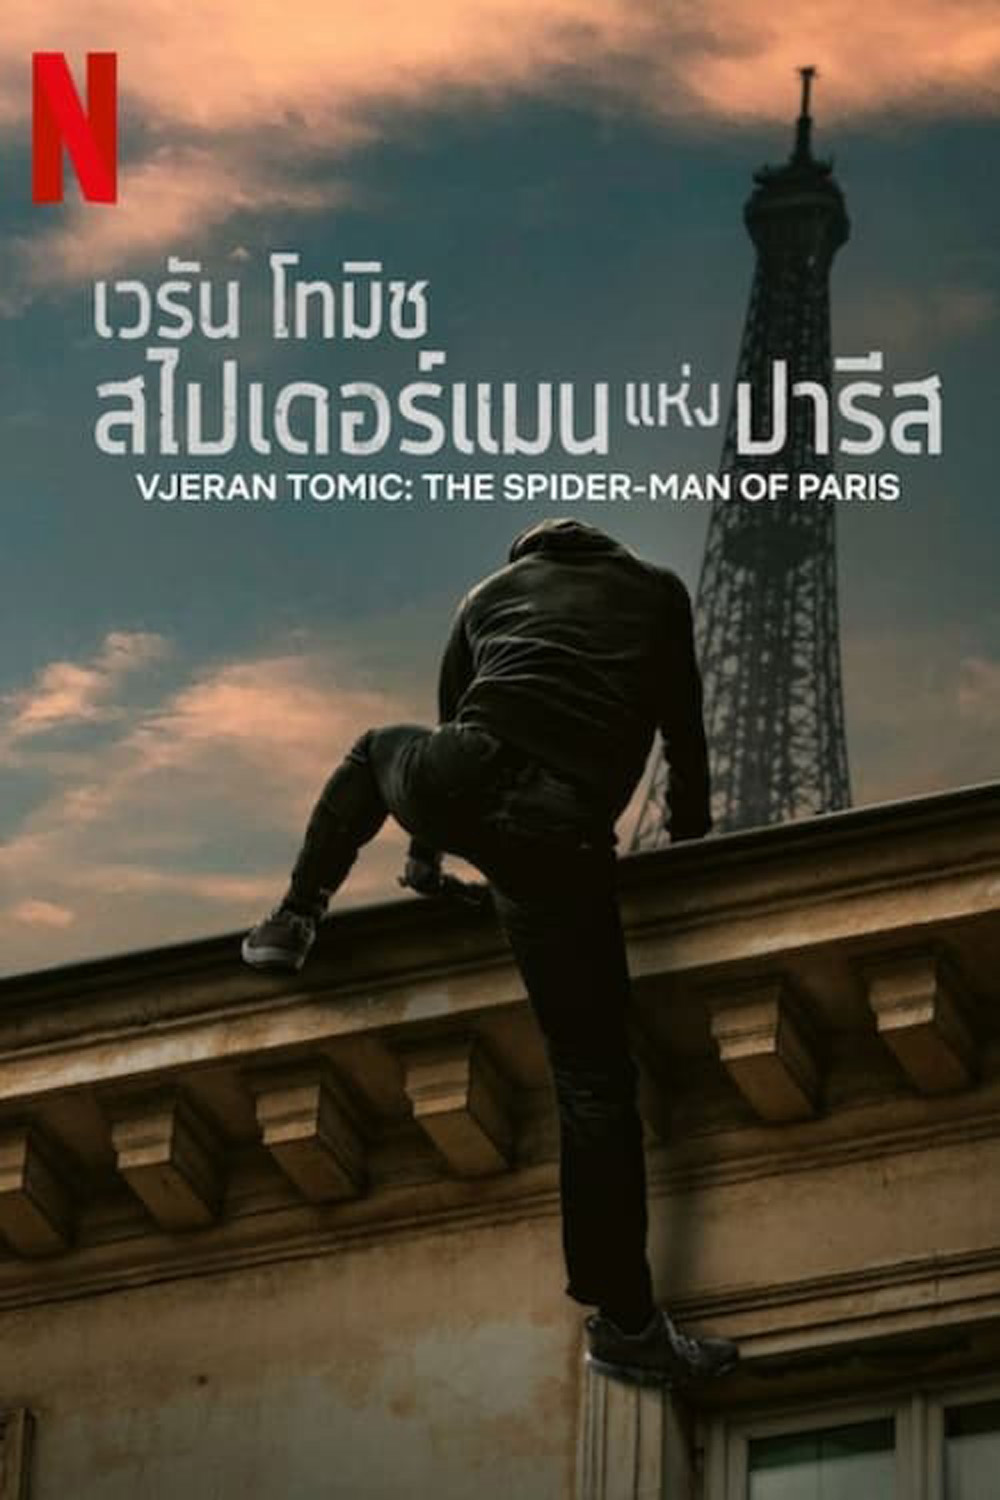 เวรัน โทมิช สไปเดอร์แมนแห่งปารีส Vjeran Tomic The Spider-Man of Paris (2023) (เสียง ไทย /ฝรั่งเศส | ซับ ไทย/อังกฤษ) DVD หนังใหม่ ดีวีดี | Lazada.co.th